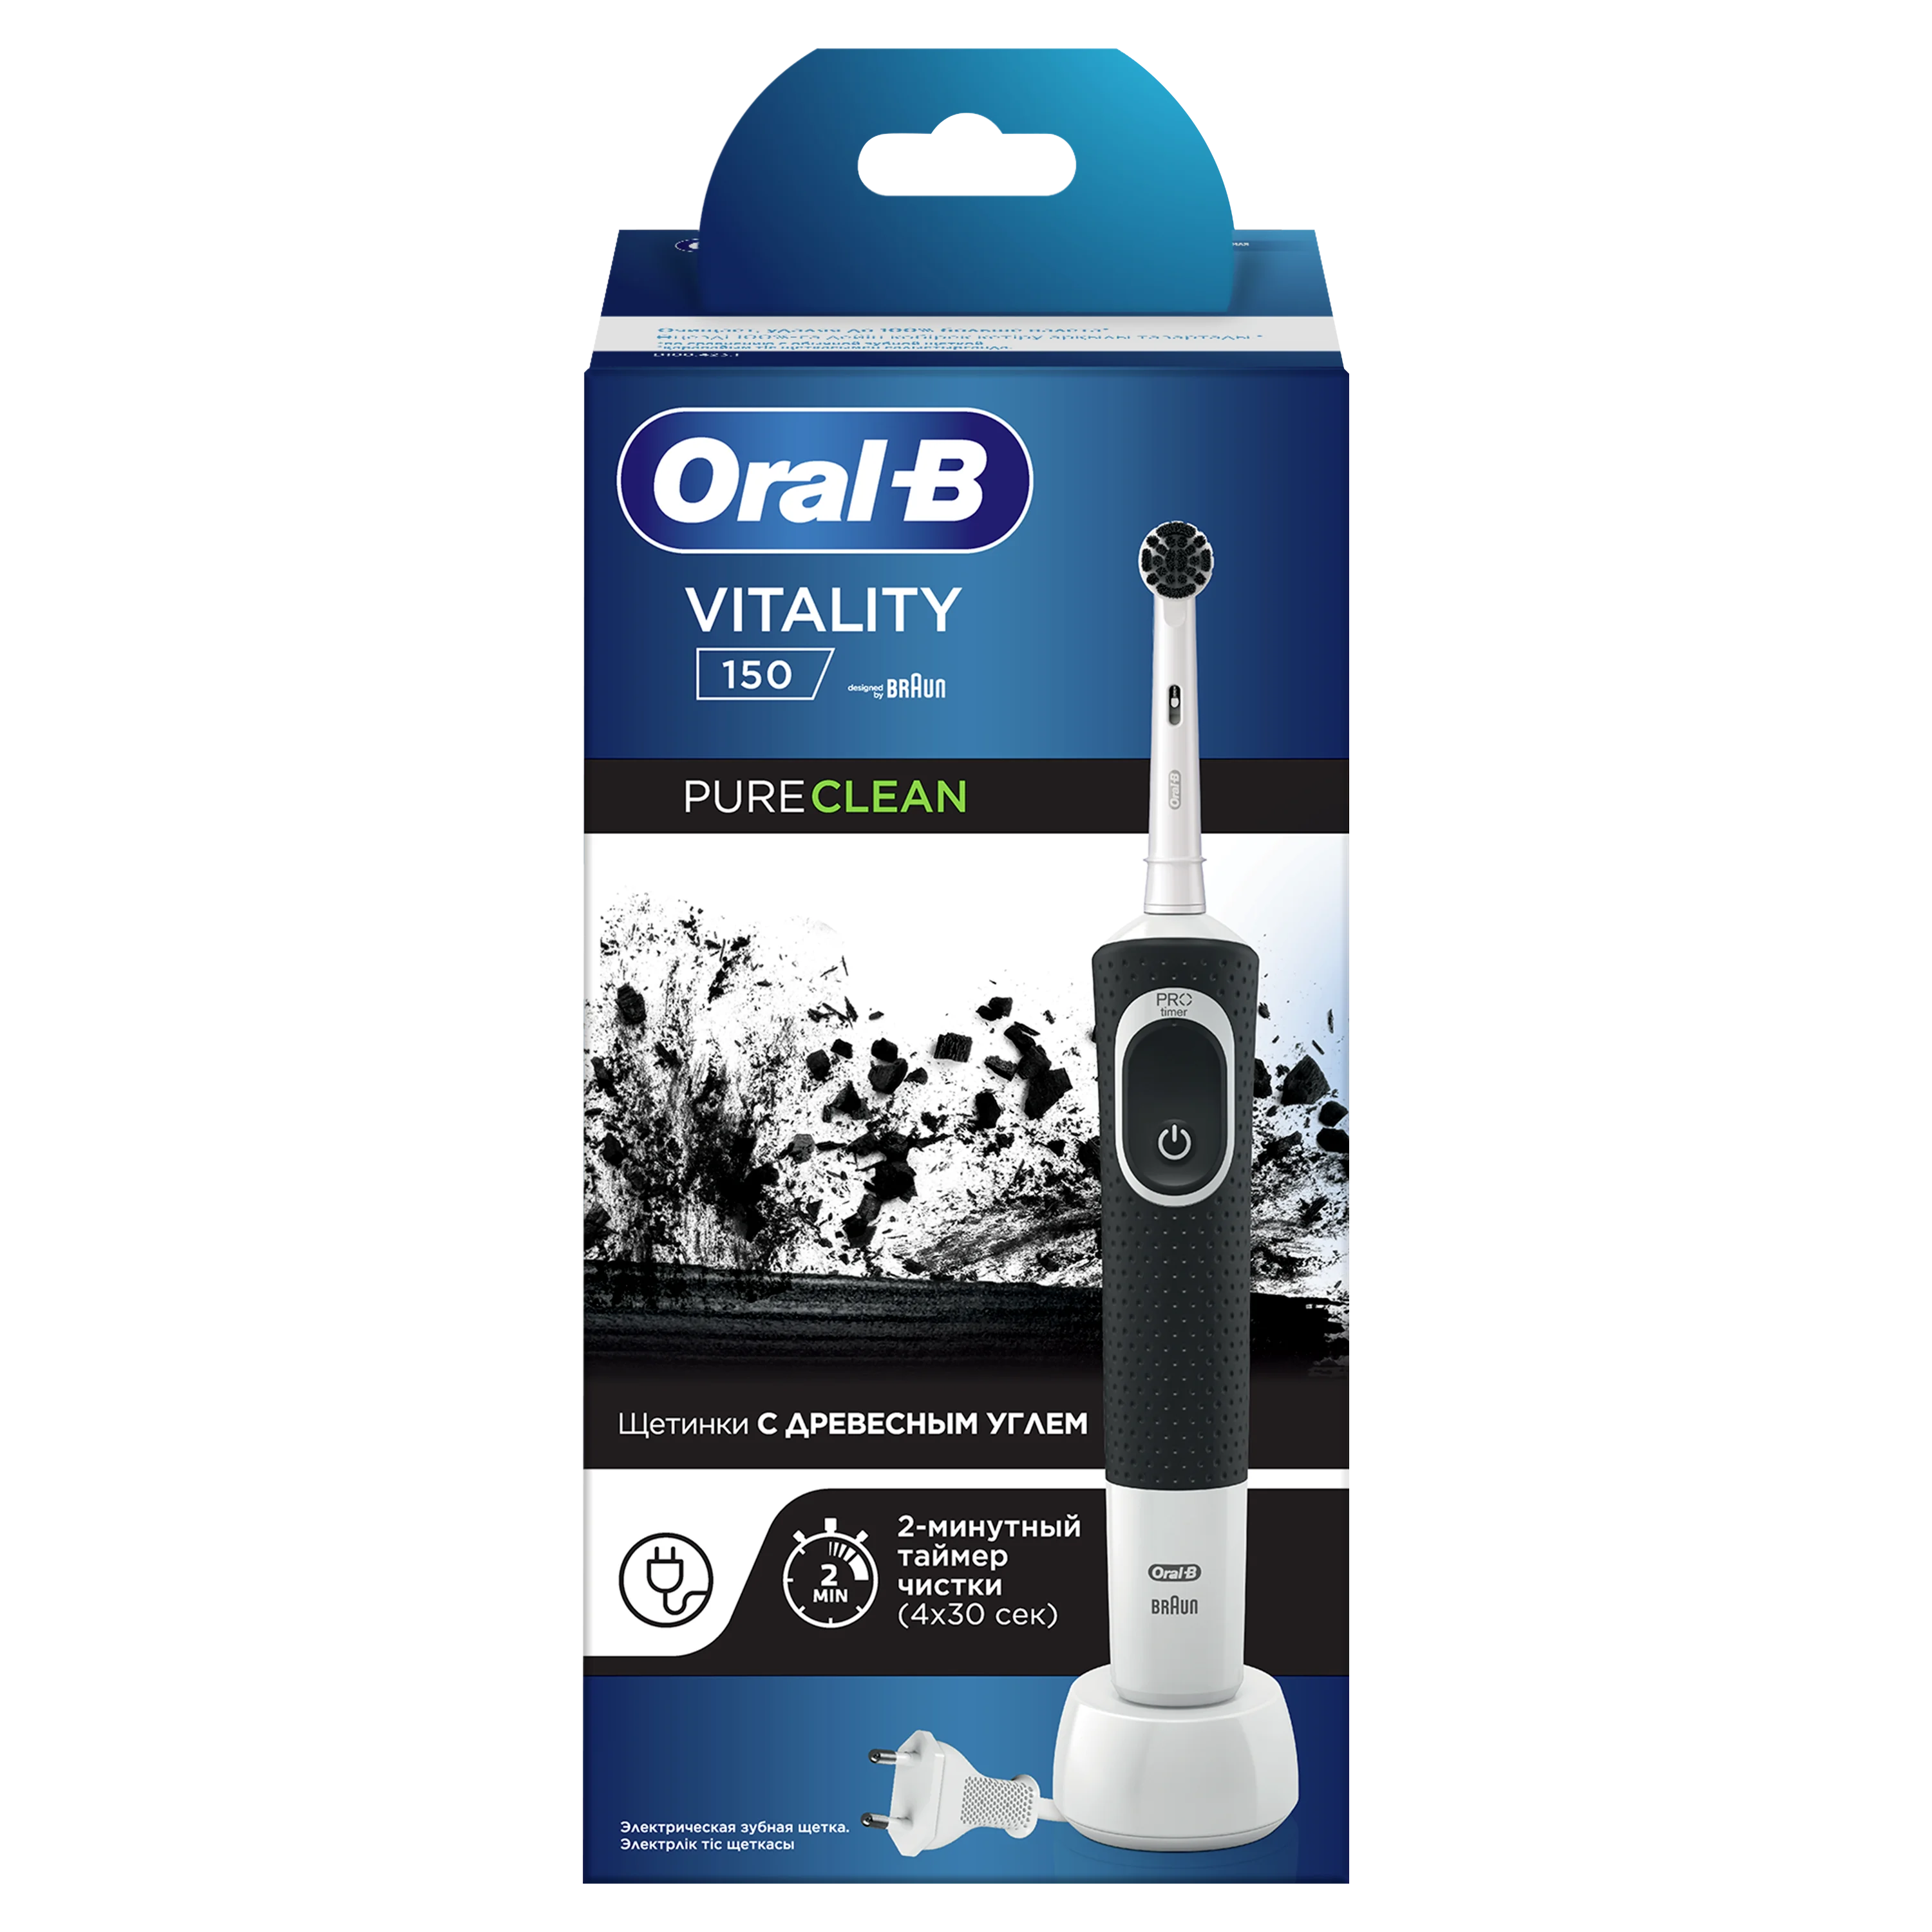 Oral-b canlılık % 150 saf temizleme elektrikli diş fırçası, siyah Oral B  diş fırçası - AliExpress